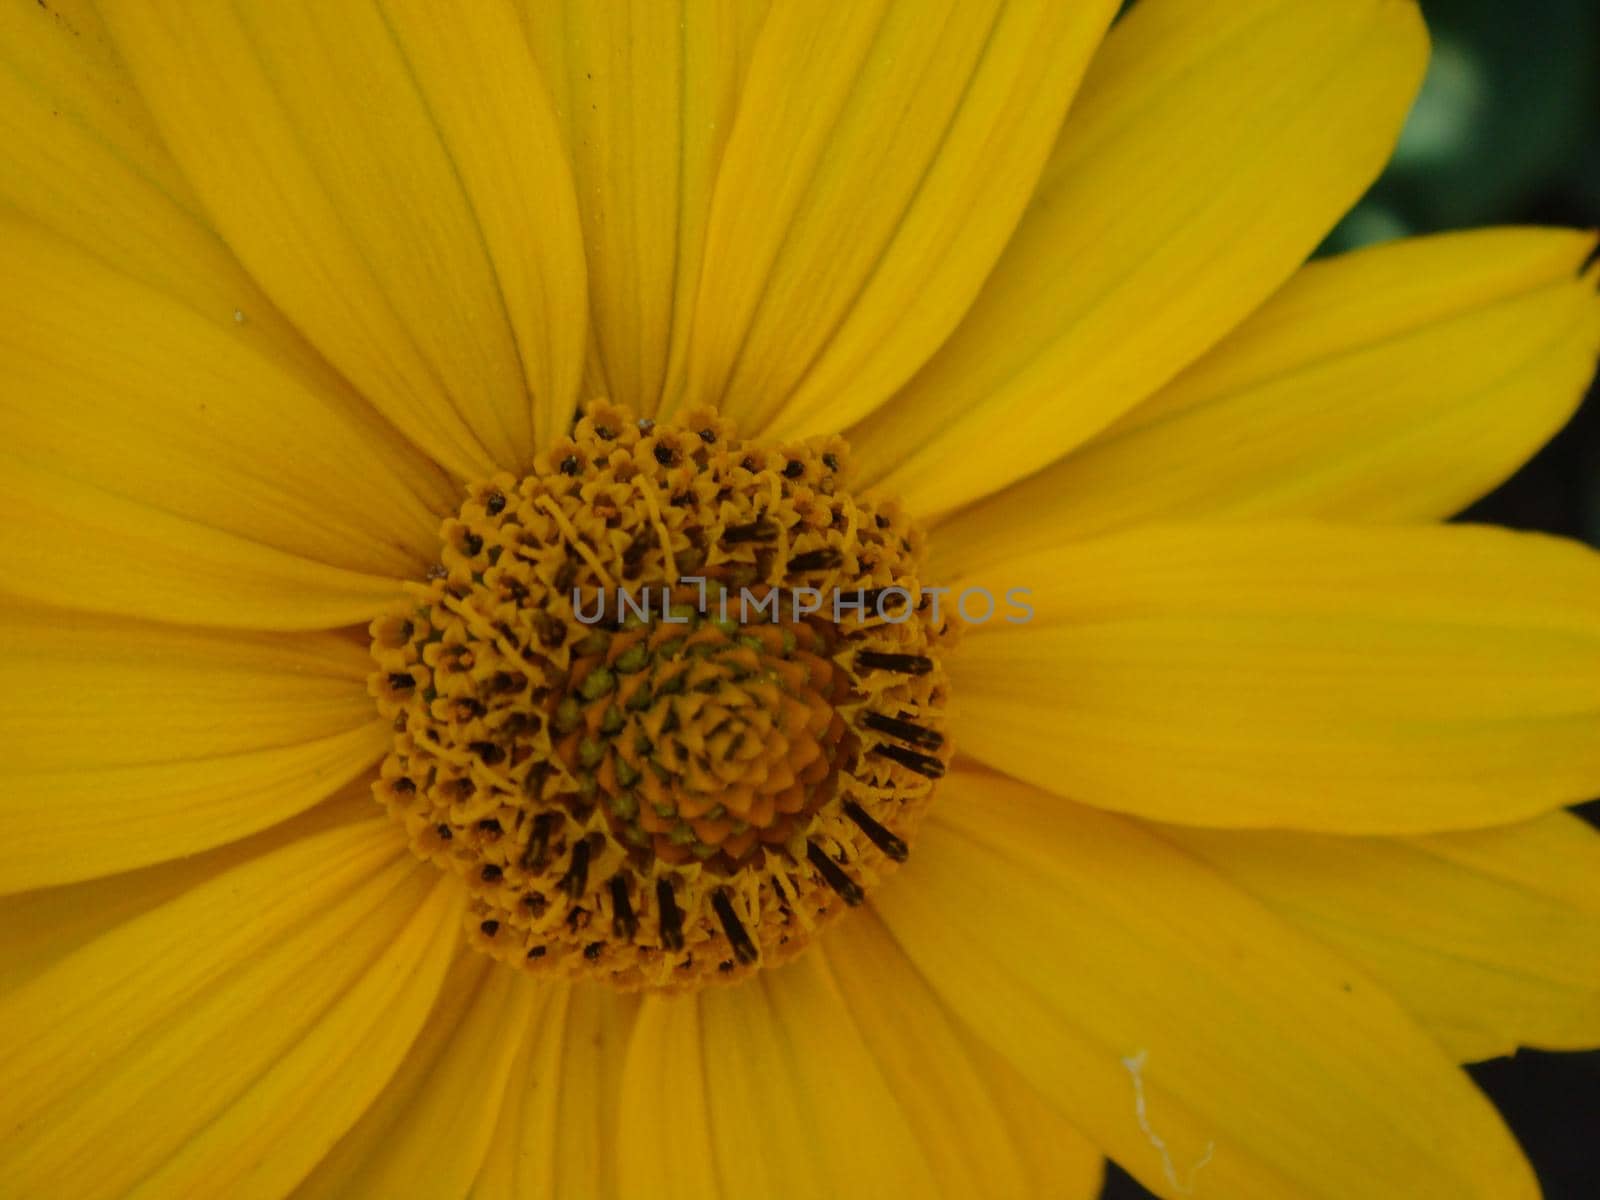 Macro shot maxican sunflower, yellow flower background by NatalyArt